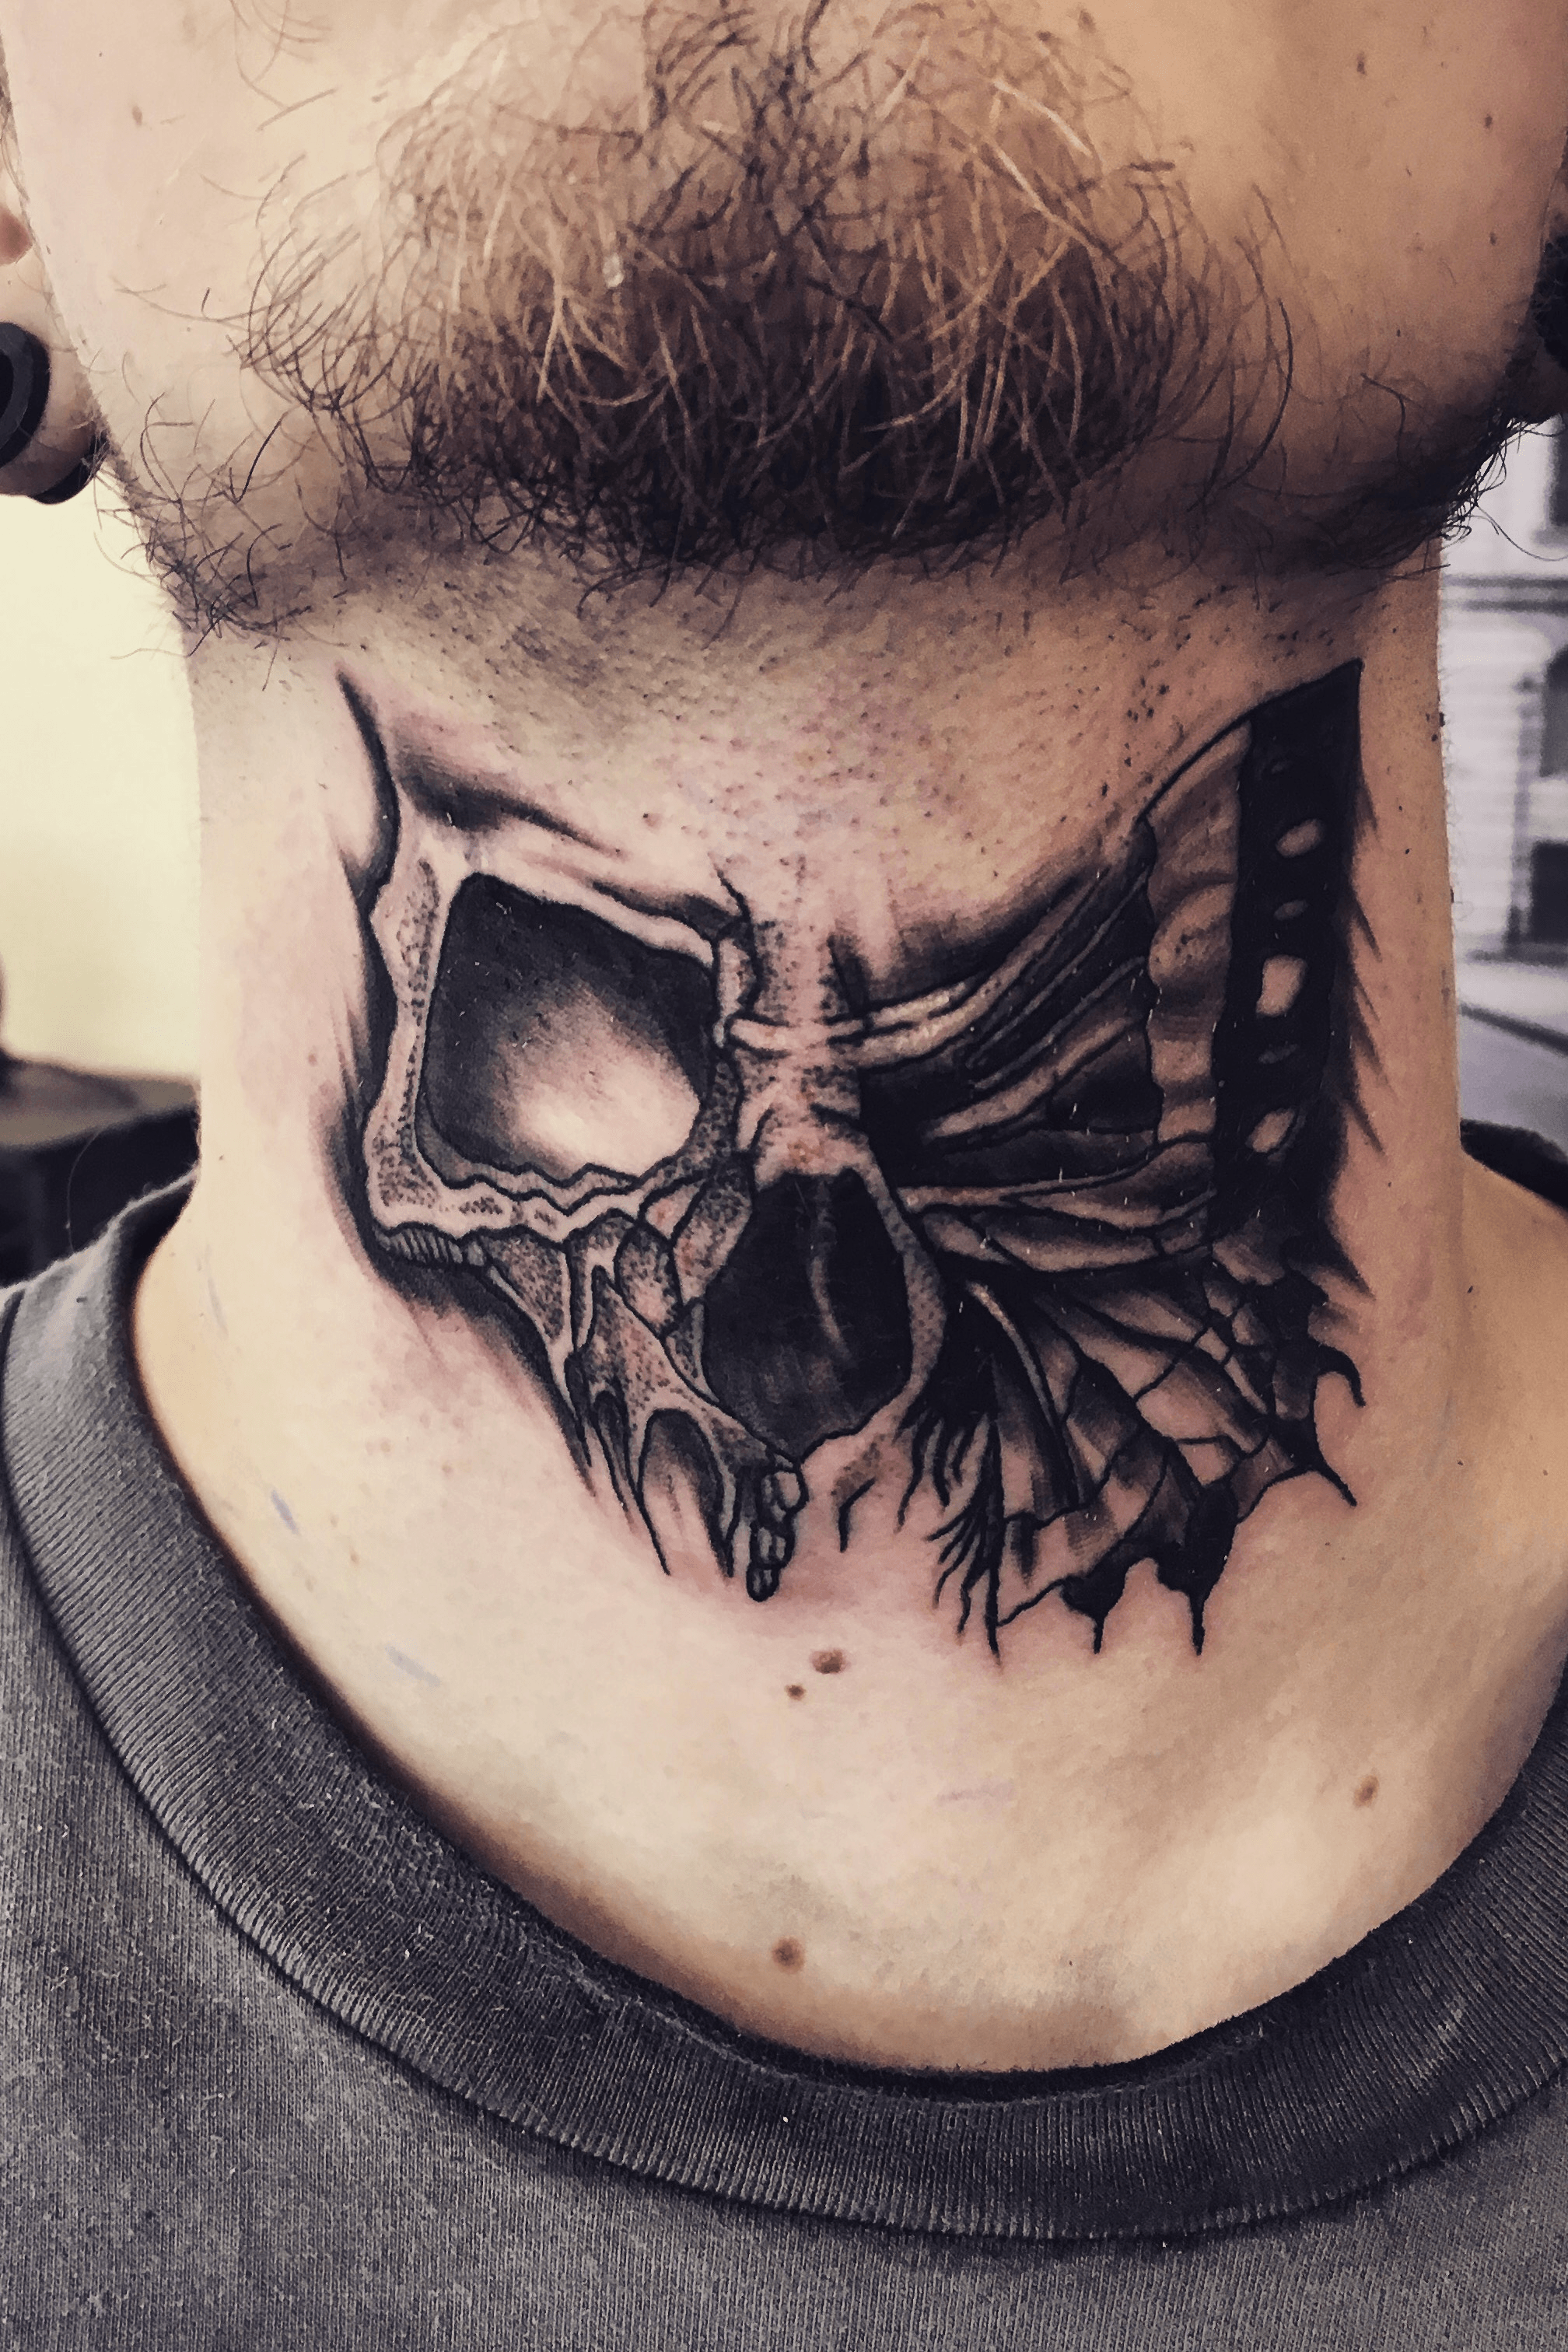 Tattoo uploaded by Marek Muska  Skull butterfly tatt on neck blackwork   Tattoodo